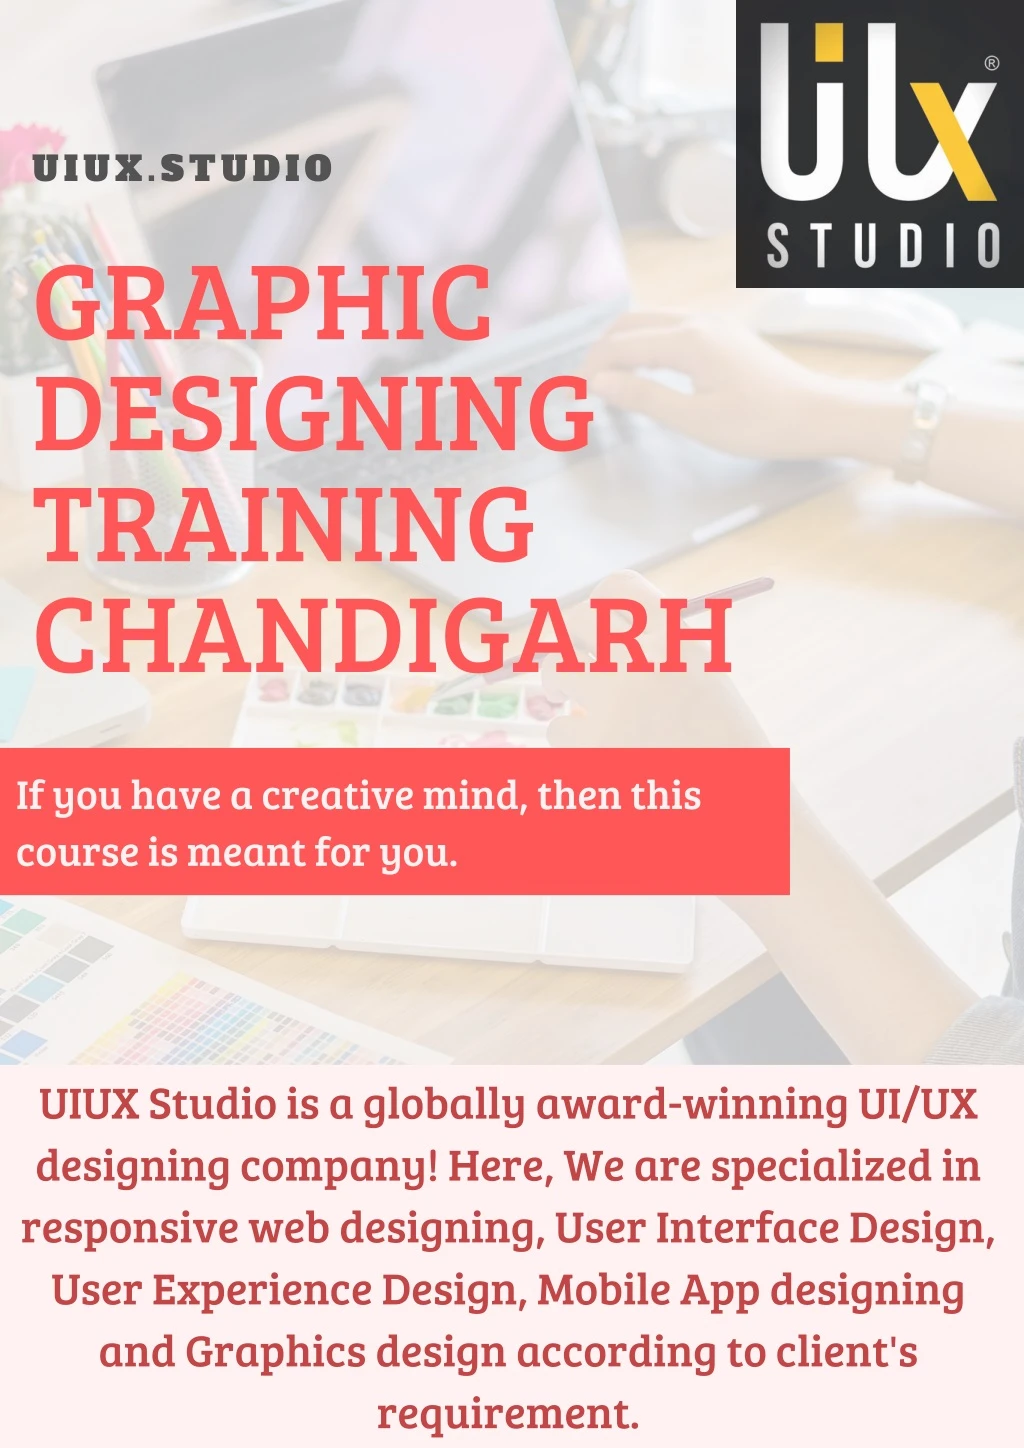 uiux studio graphic designing training chandigarh